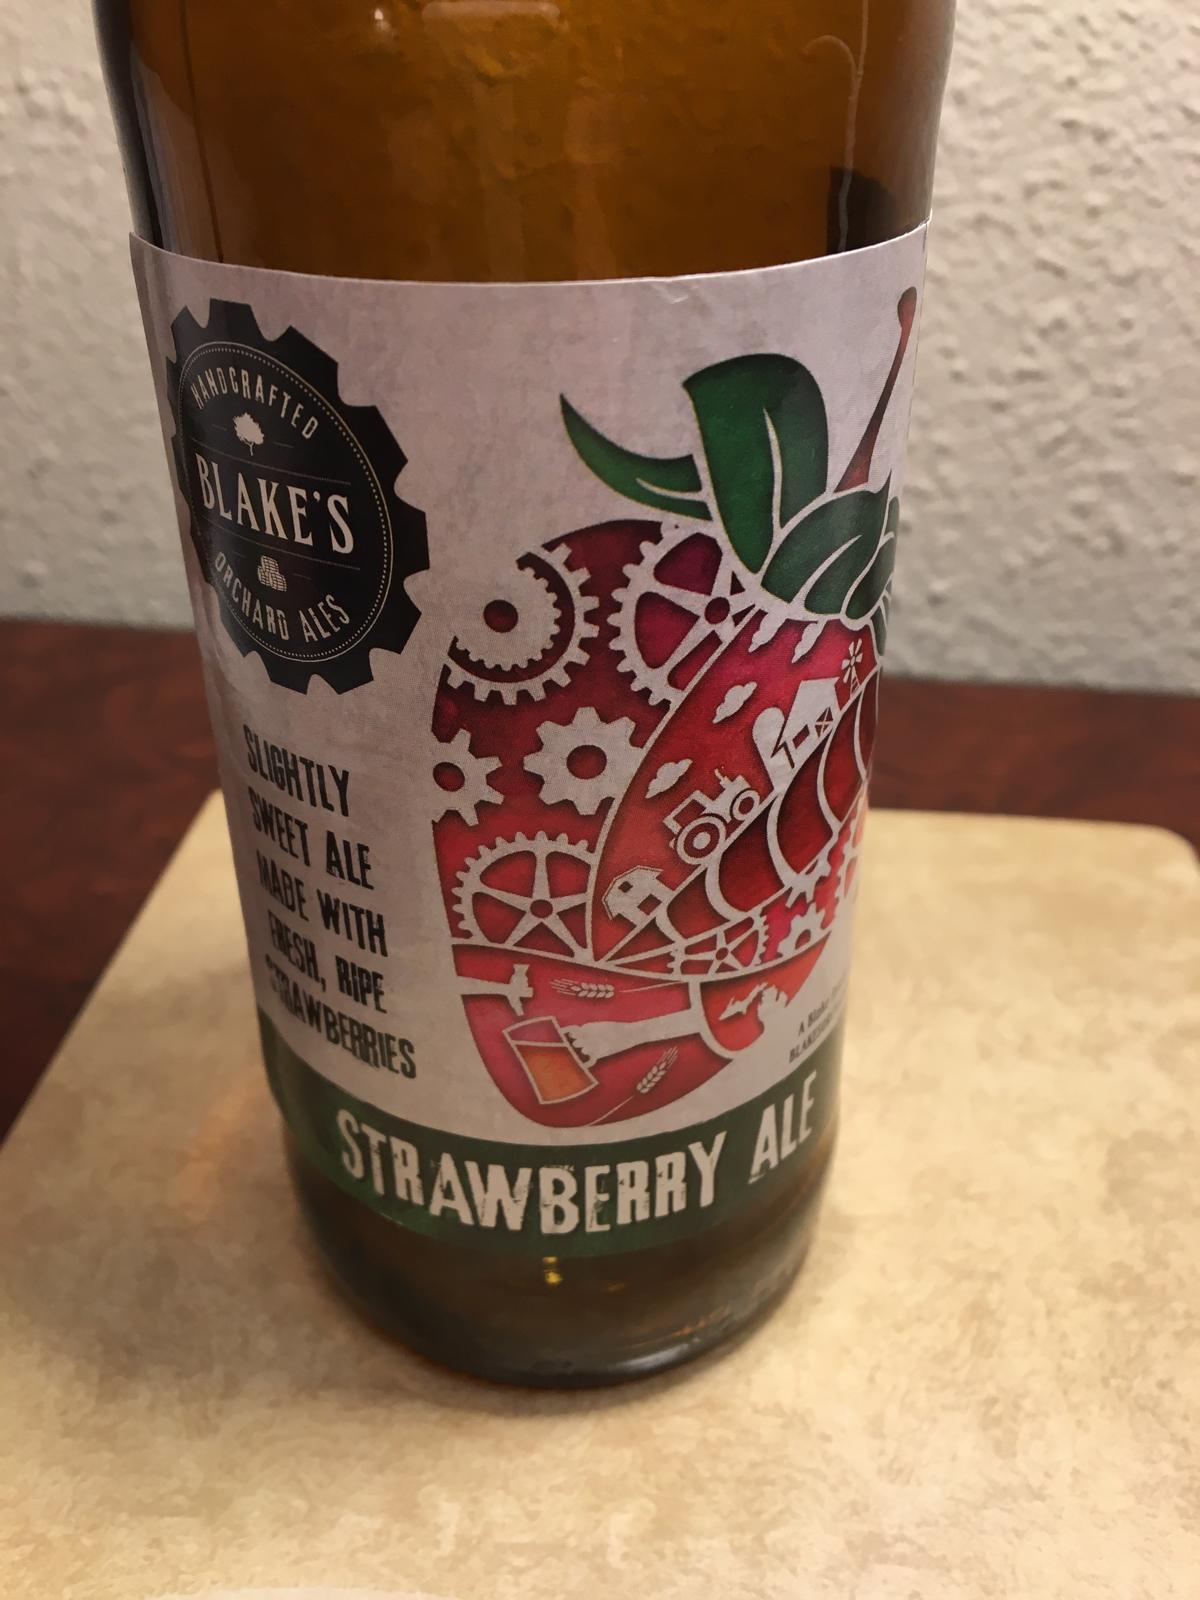 Strawberry Ale